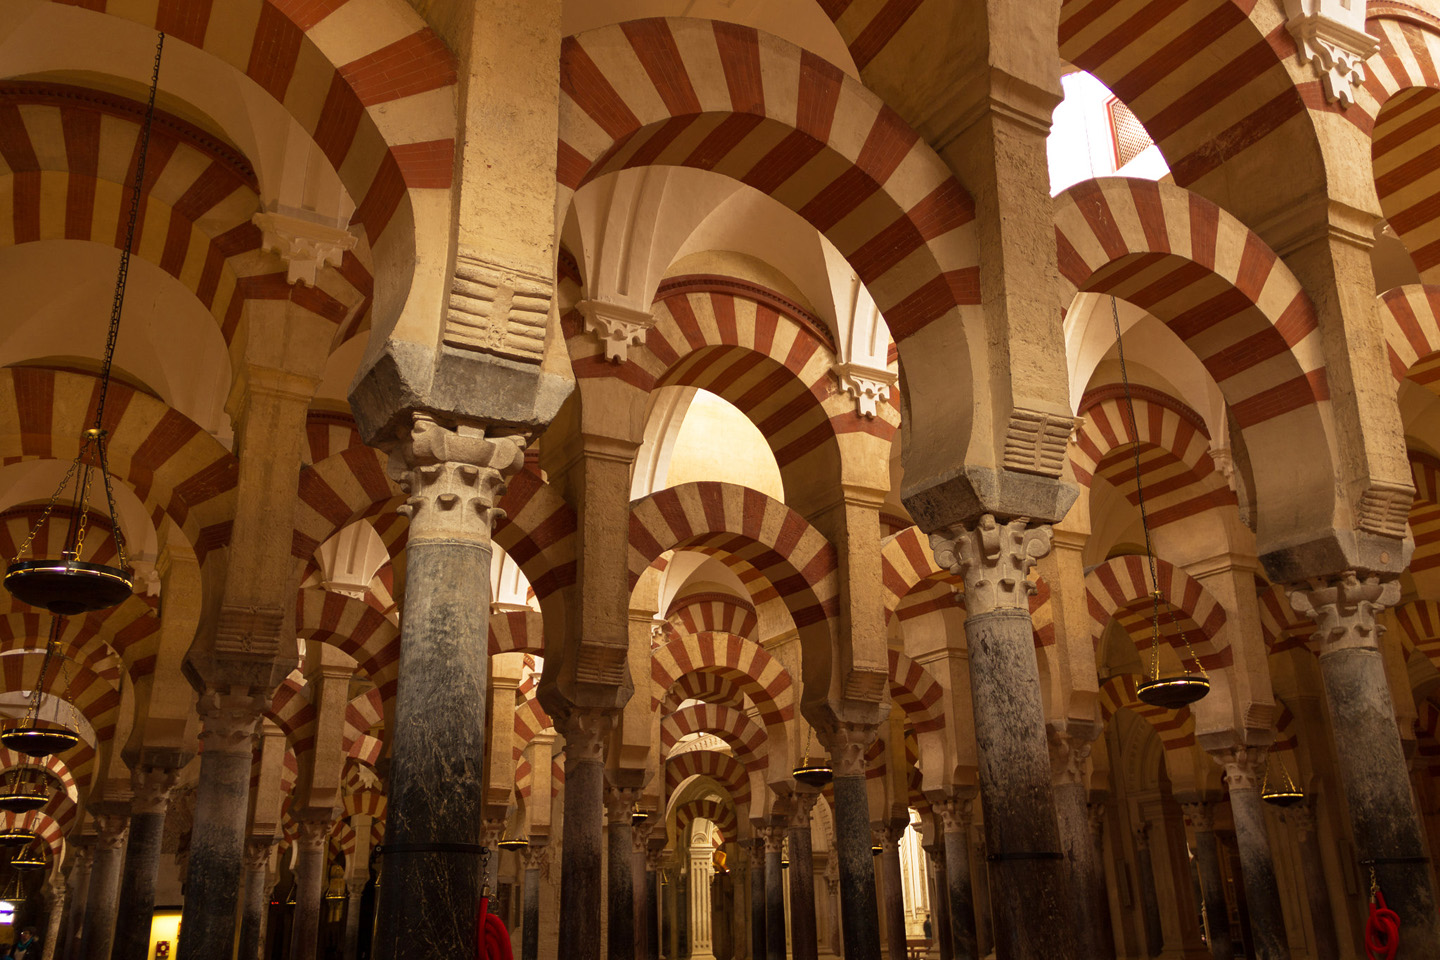 Se empezó a construir como mezquita en el año 785, con la apropiación y reutilización de los materiales de la basílica hispano-romana de San Vicente Mártir, que se hallaba en su lugar, por los conquistadores musulmanes. Tras la reconquista cristiana de Córdoba en 1236, Fernando III de Castilla convirtió la mezquita en catedral. 